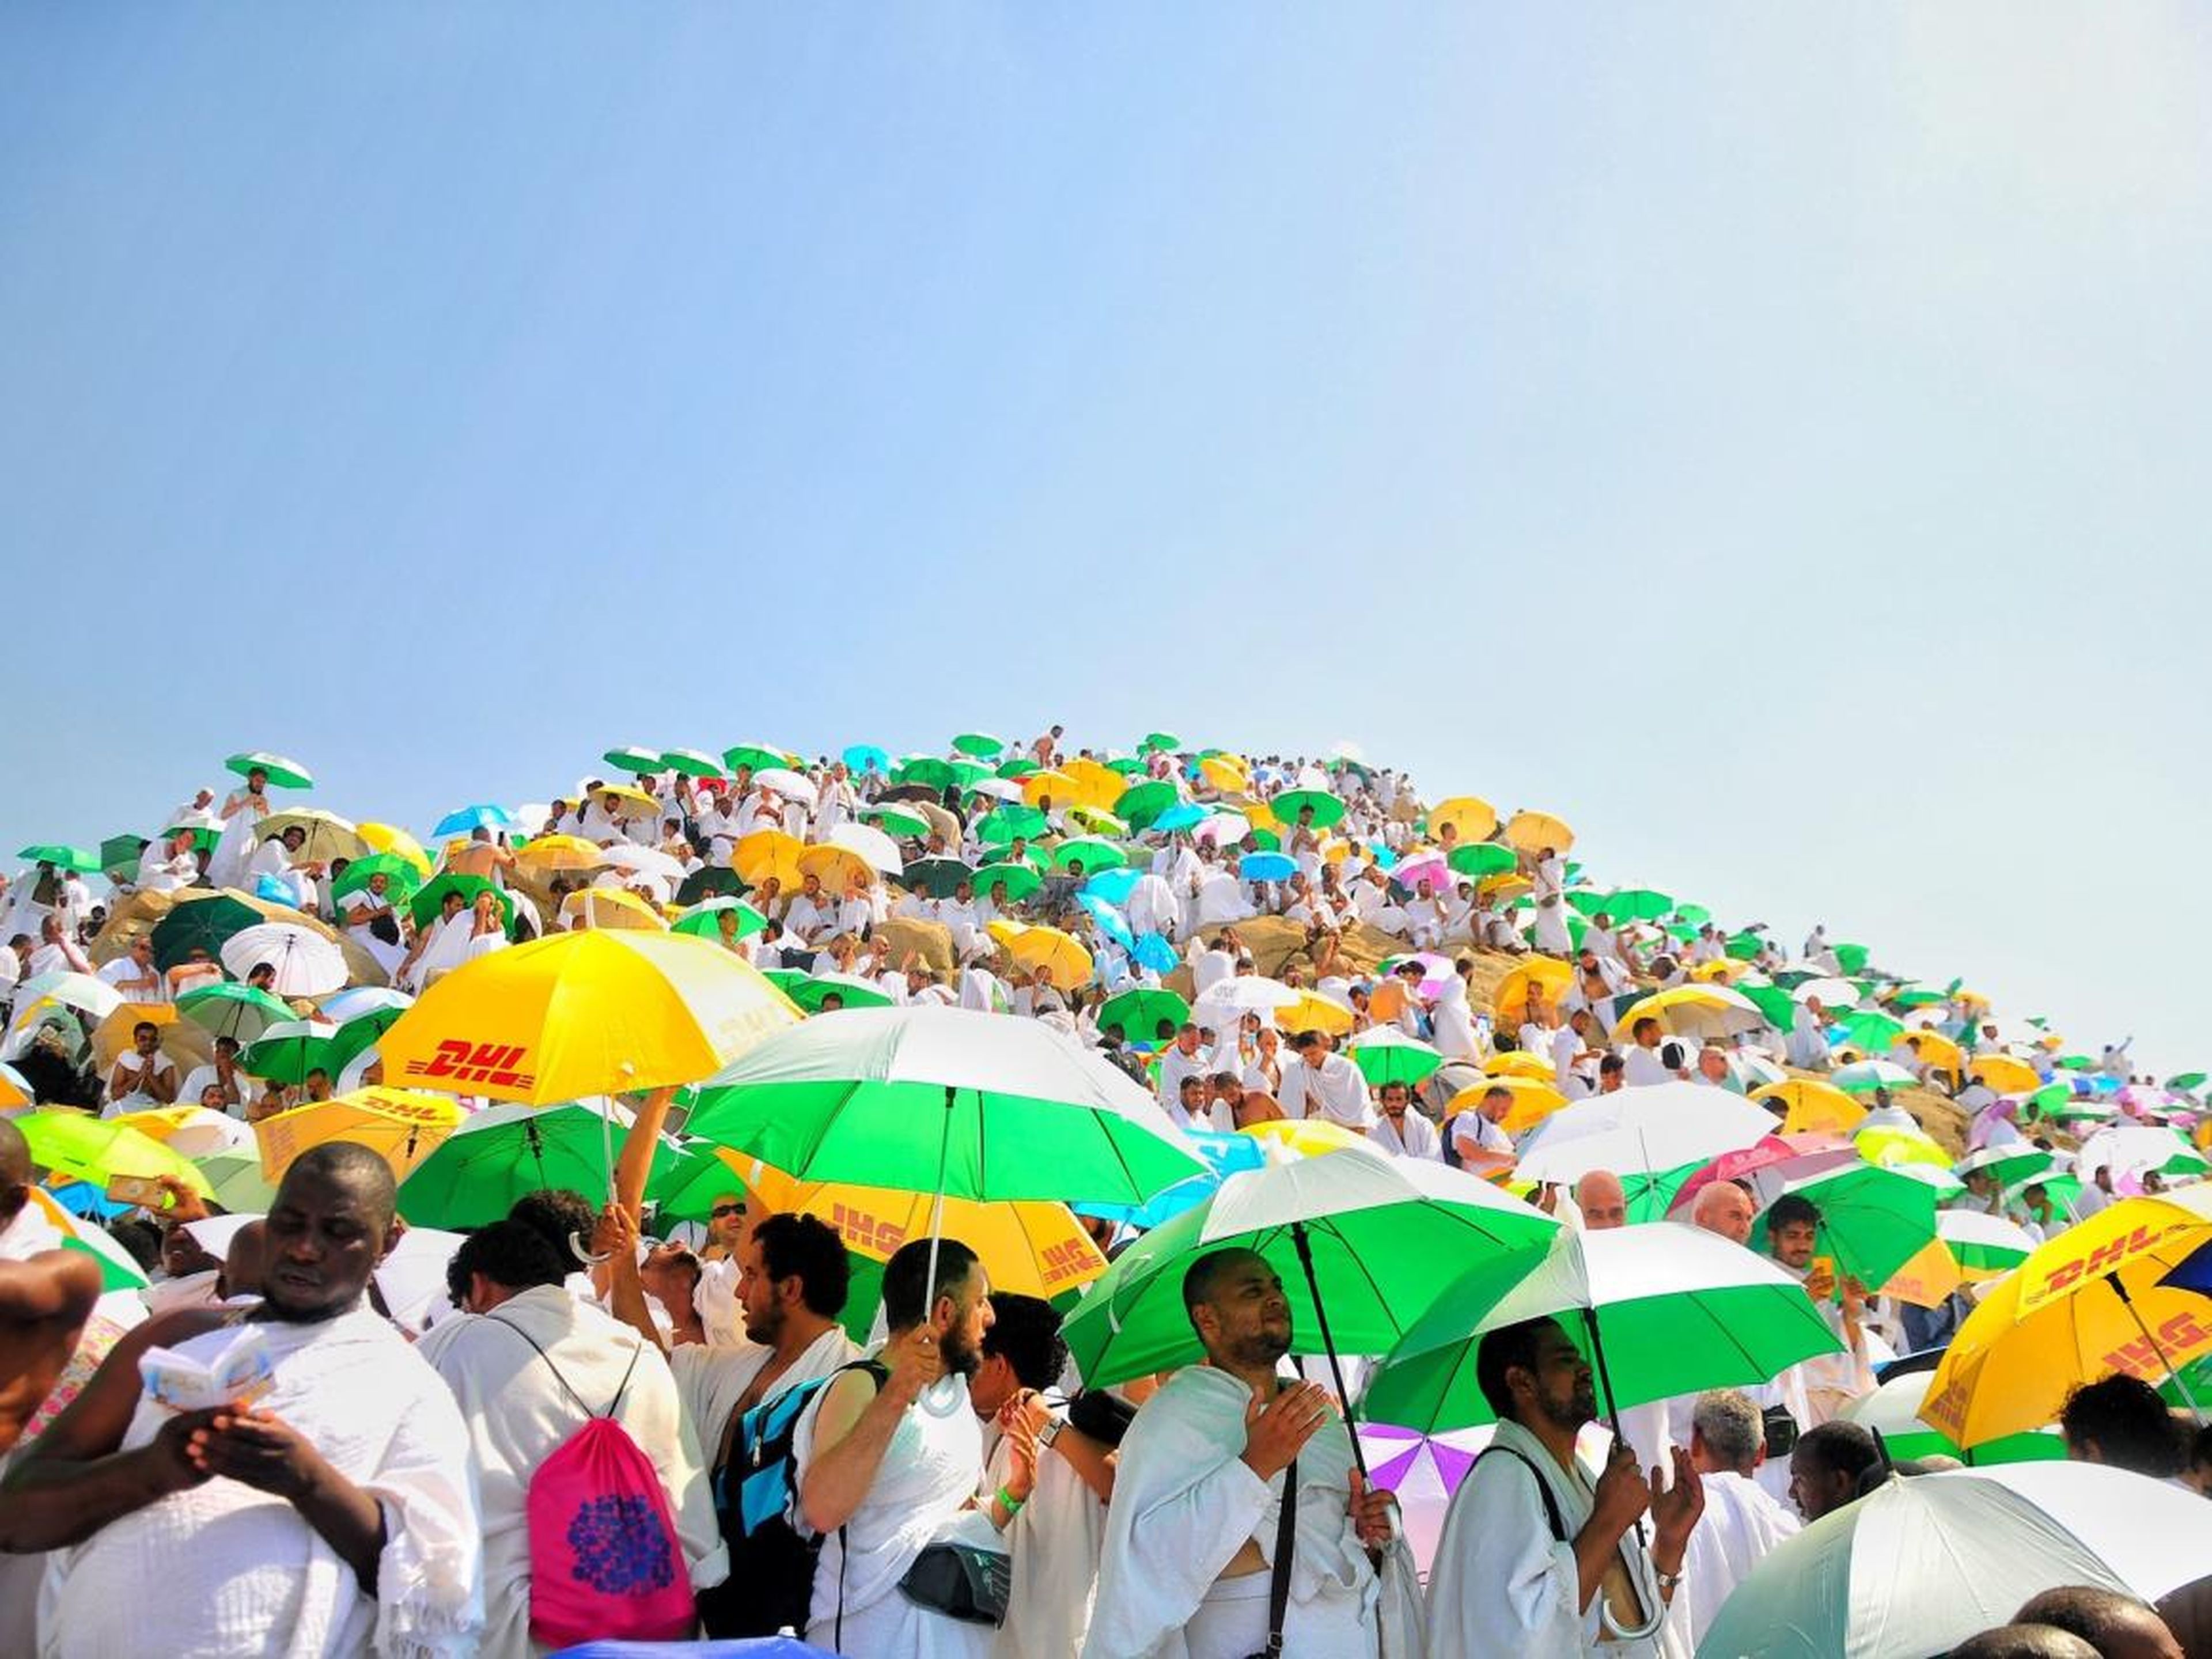 Los peregrinos musulmanes suelen llevar paraguas para protegerse del sol.